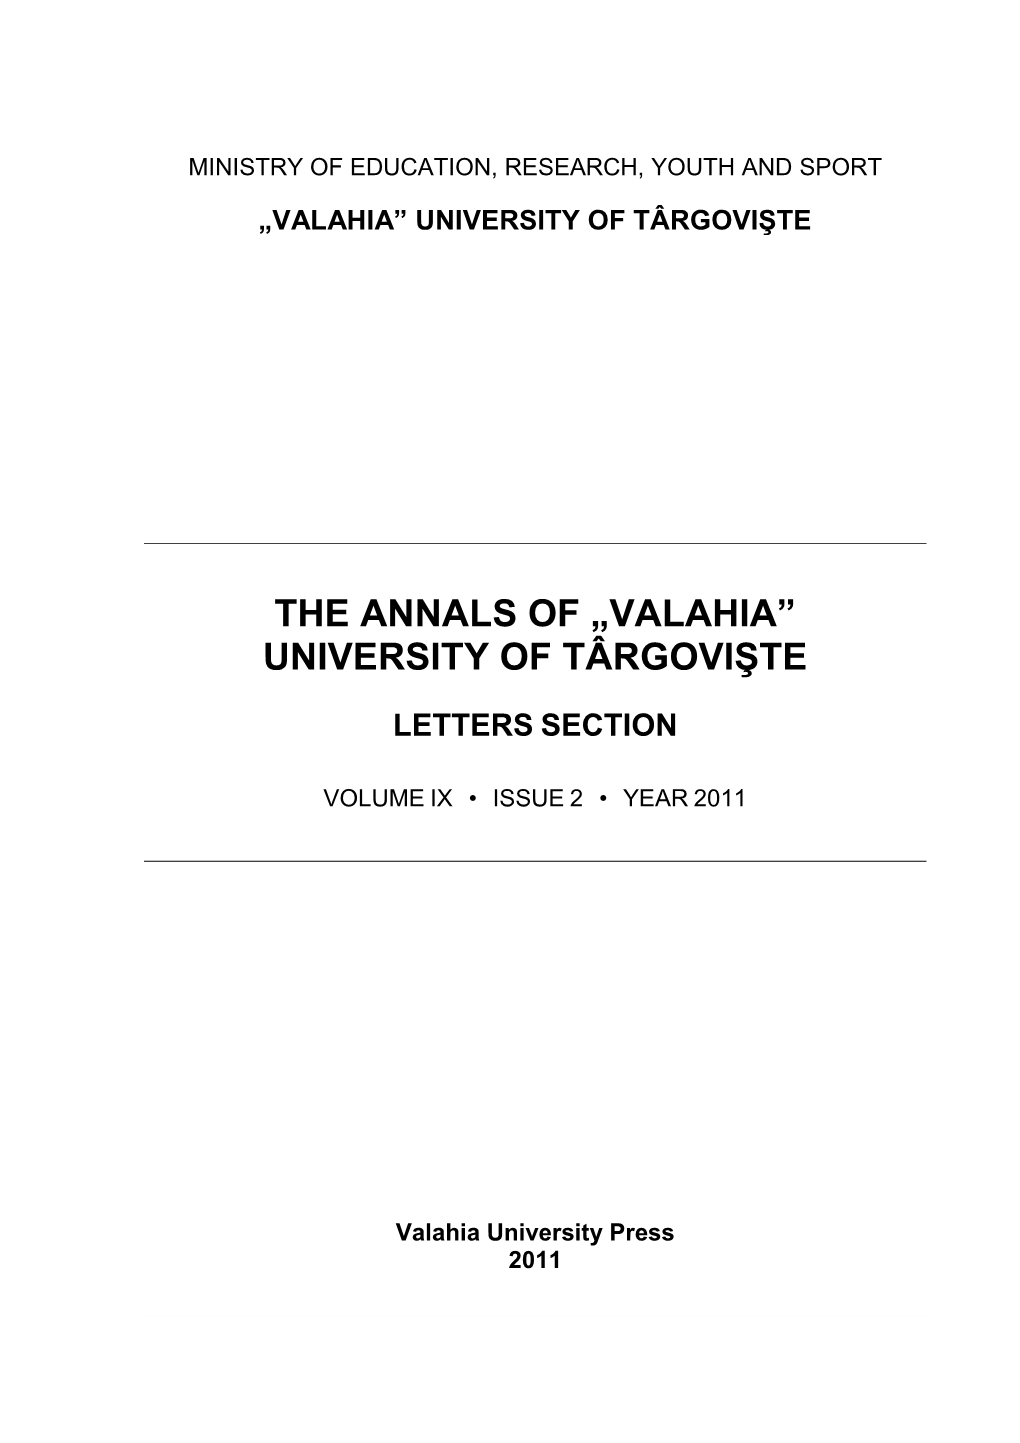 The Annals of „Valahia” University of Târgovişte